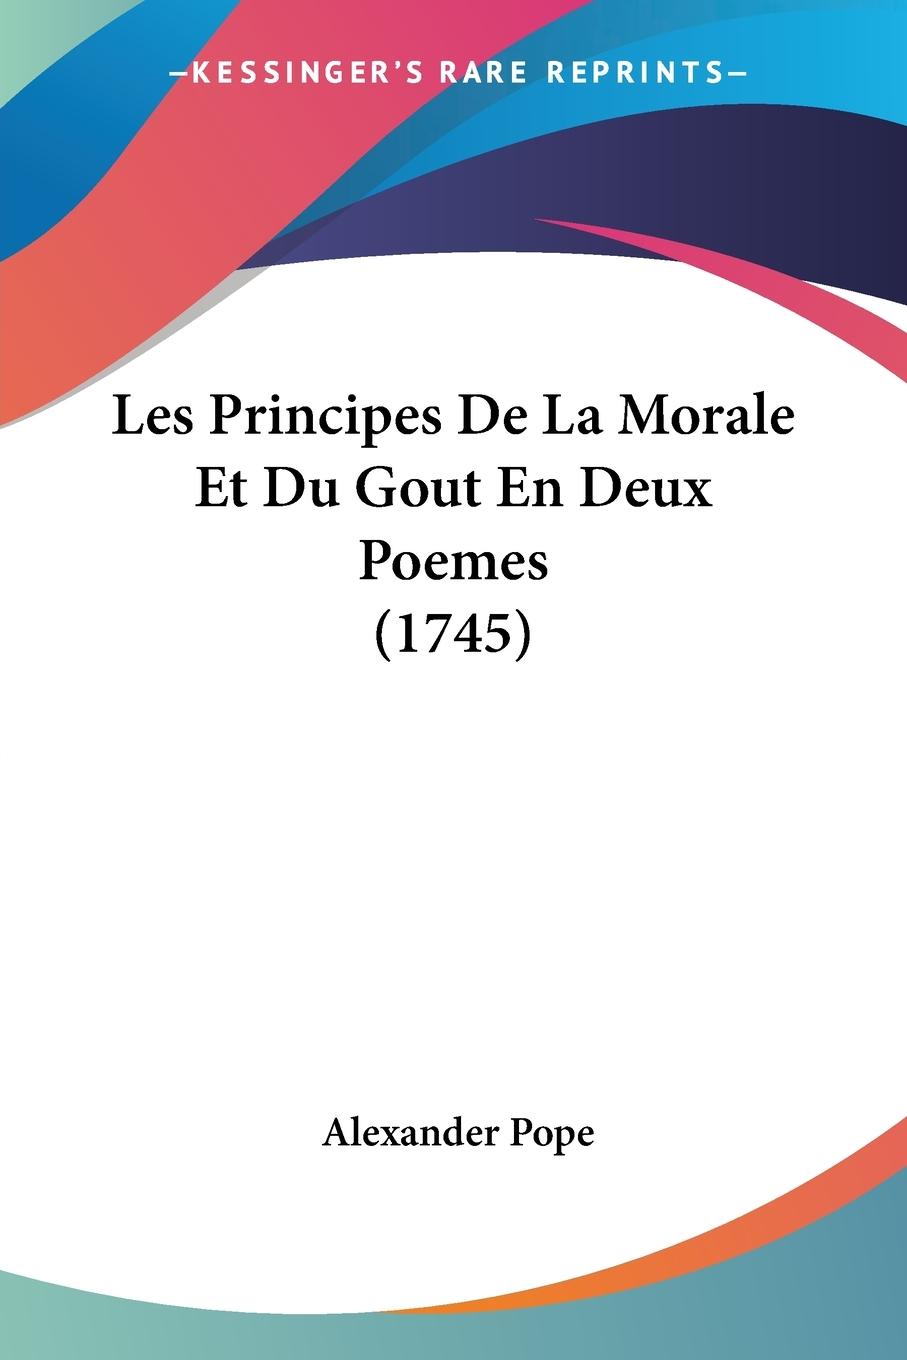 Les Principes De La Morale Et Du Gout En Deux Poemes (1745) - Pope, Alexander